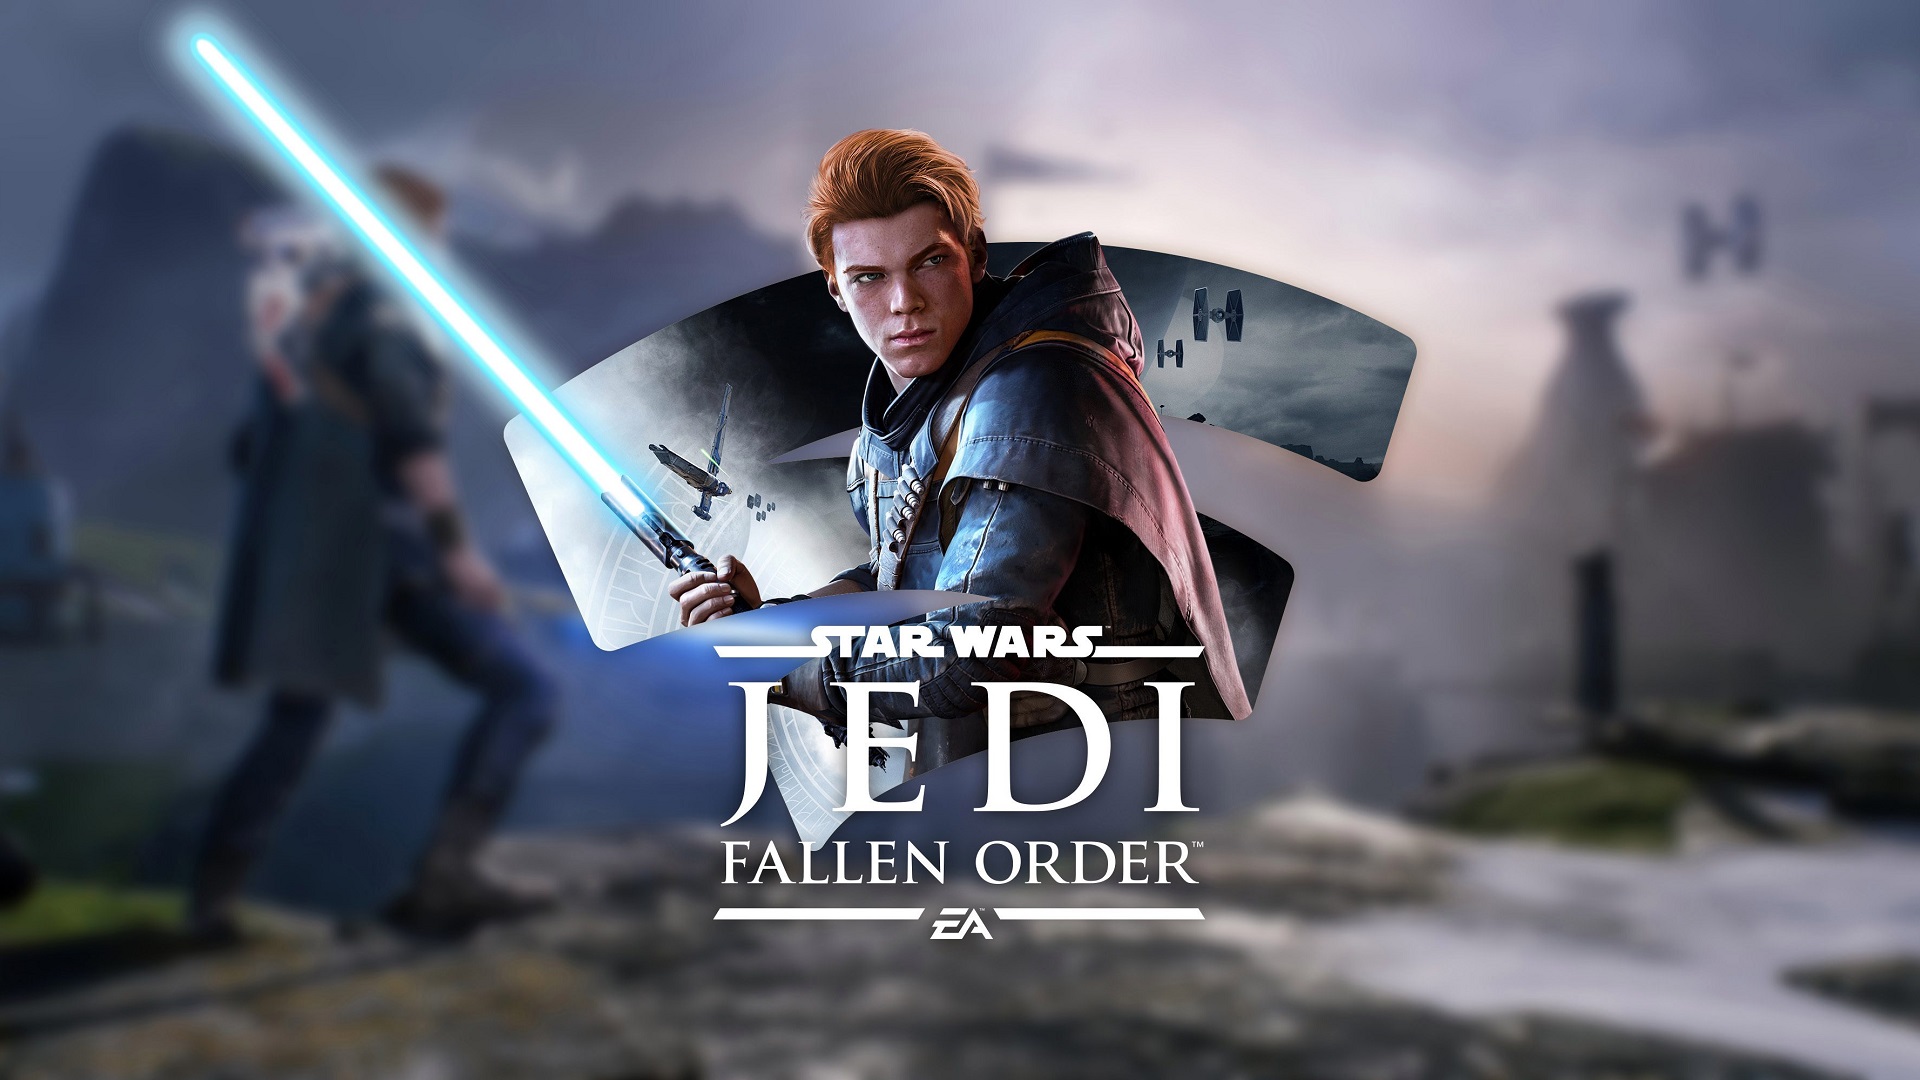 سرمایه گذاری روی سری Star Wars Jedi: Fallen Order ادامه خواهد داشت